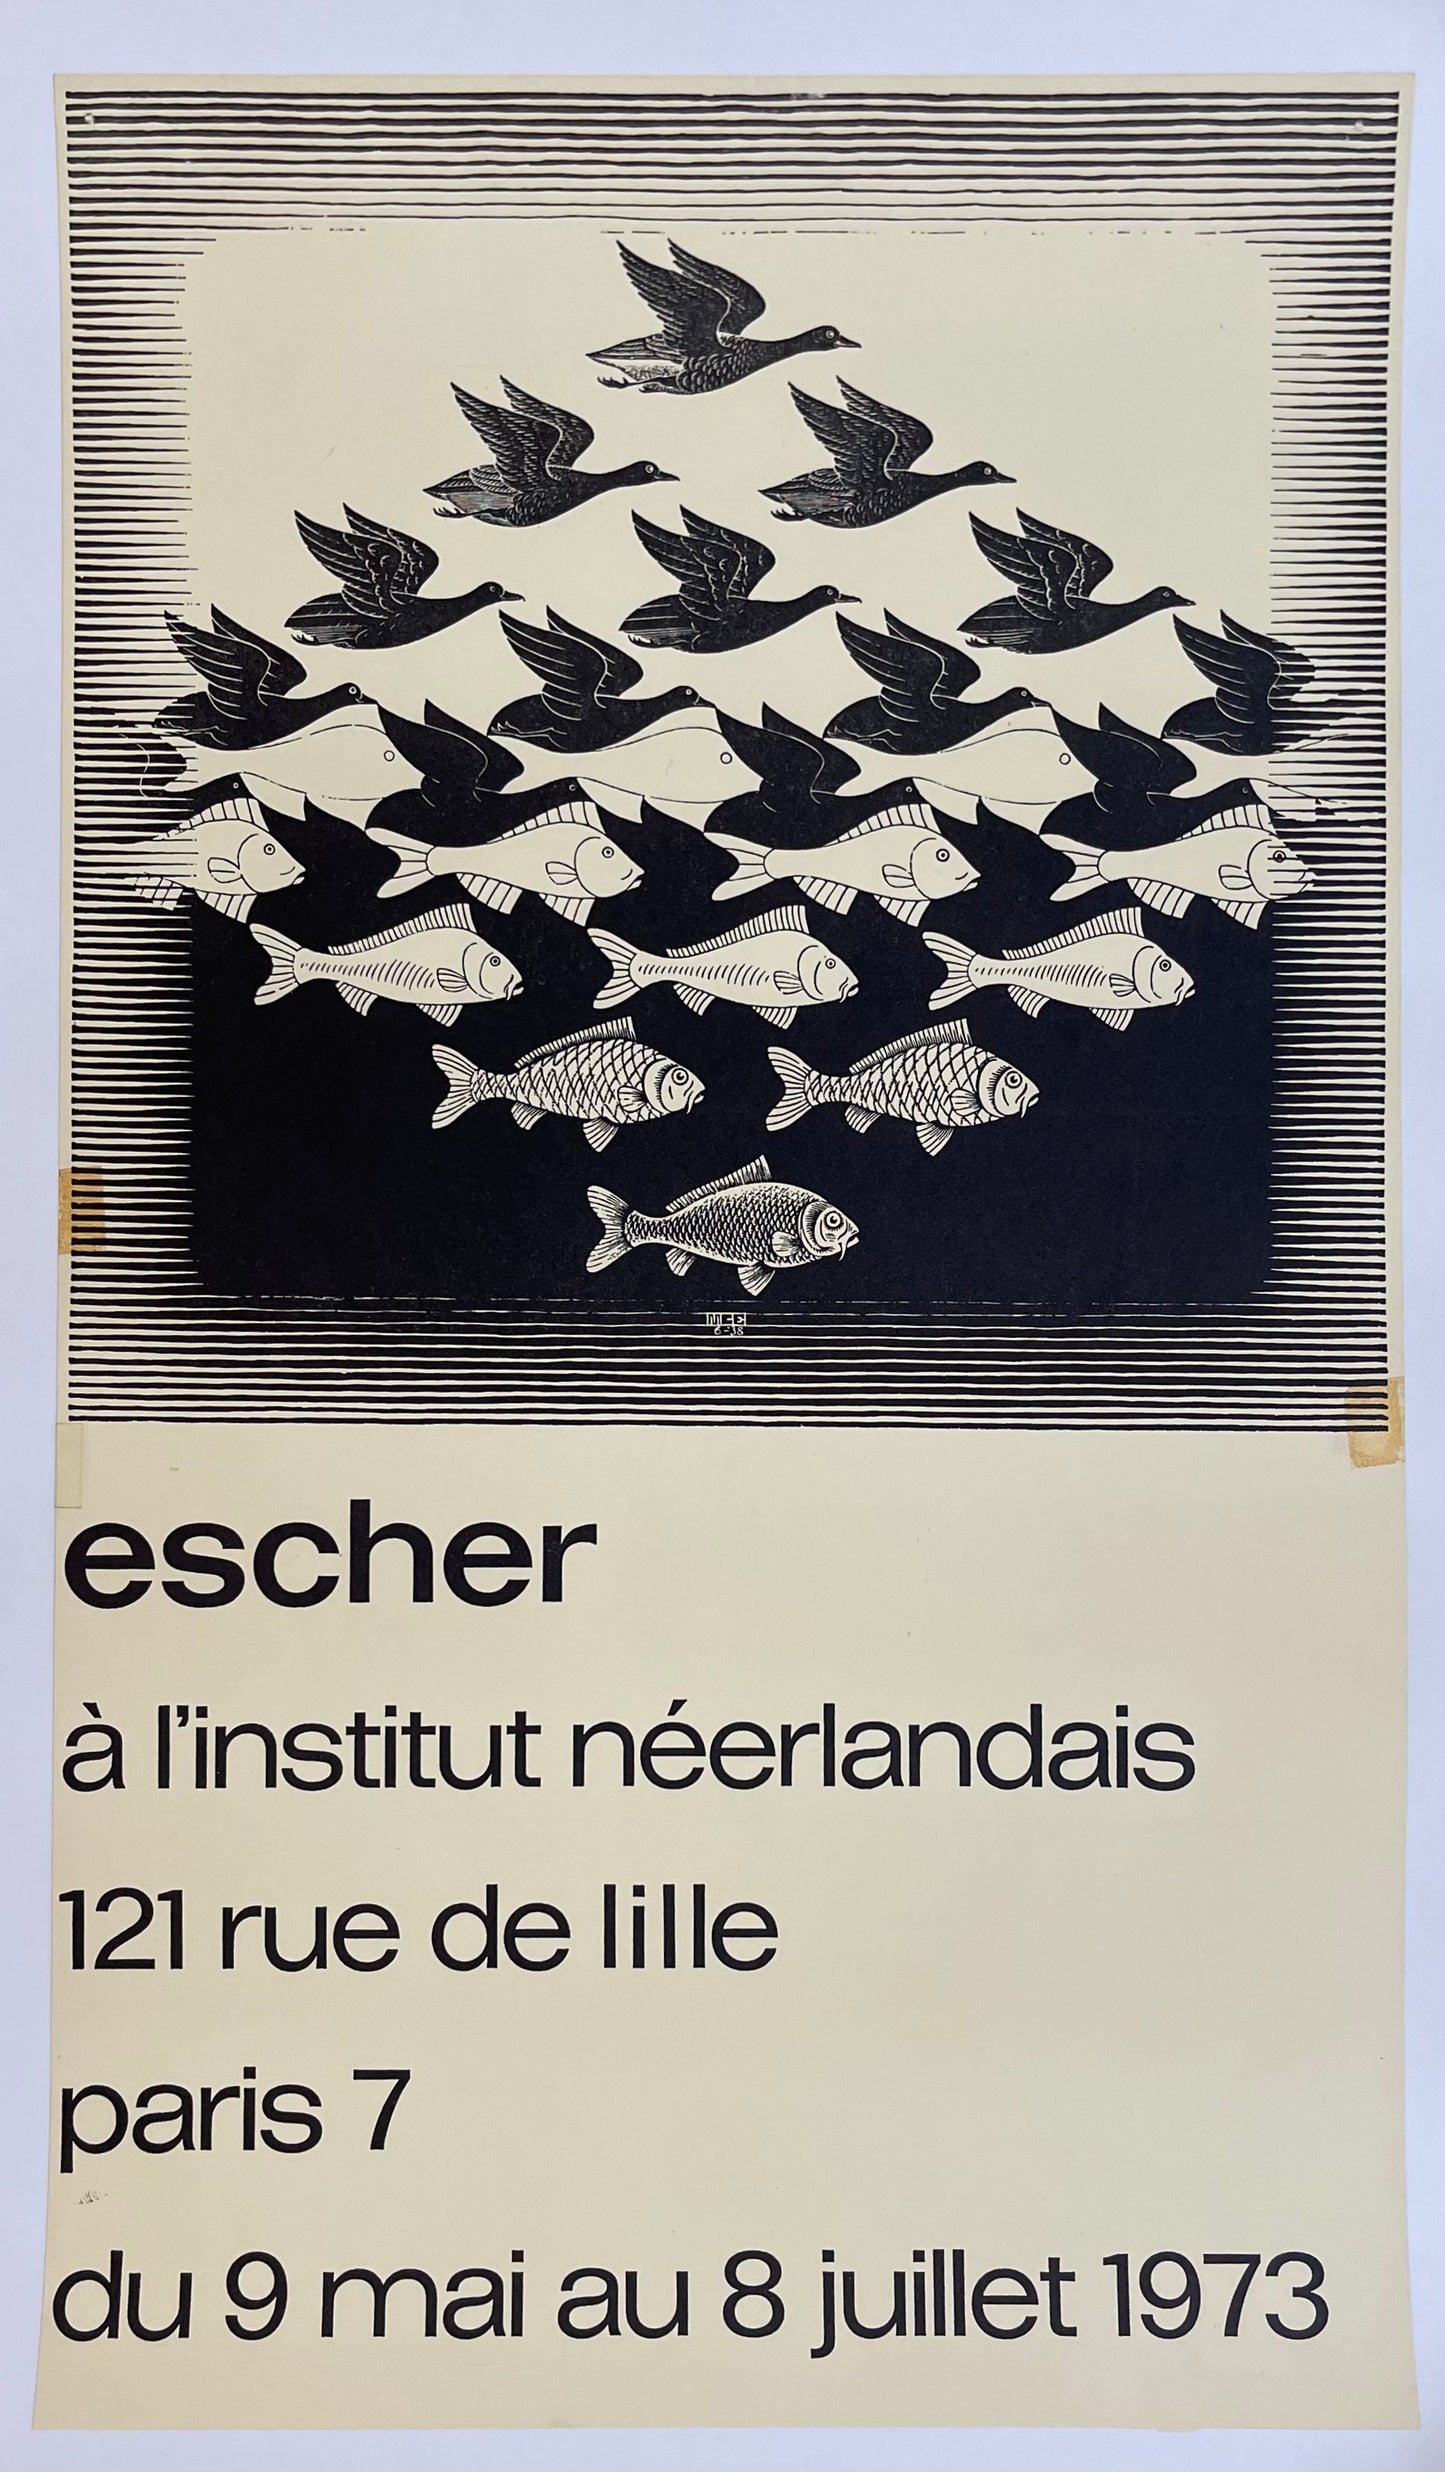 Escher Exhibition Poster